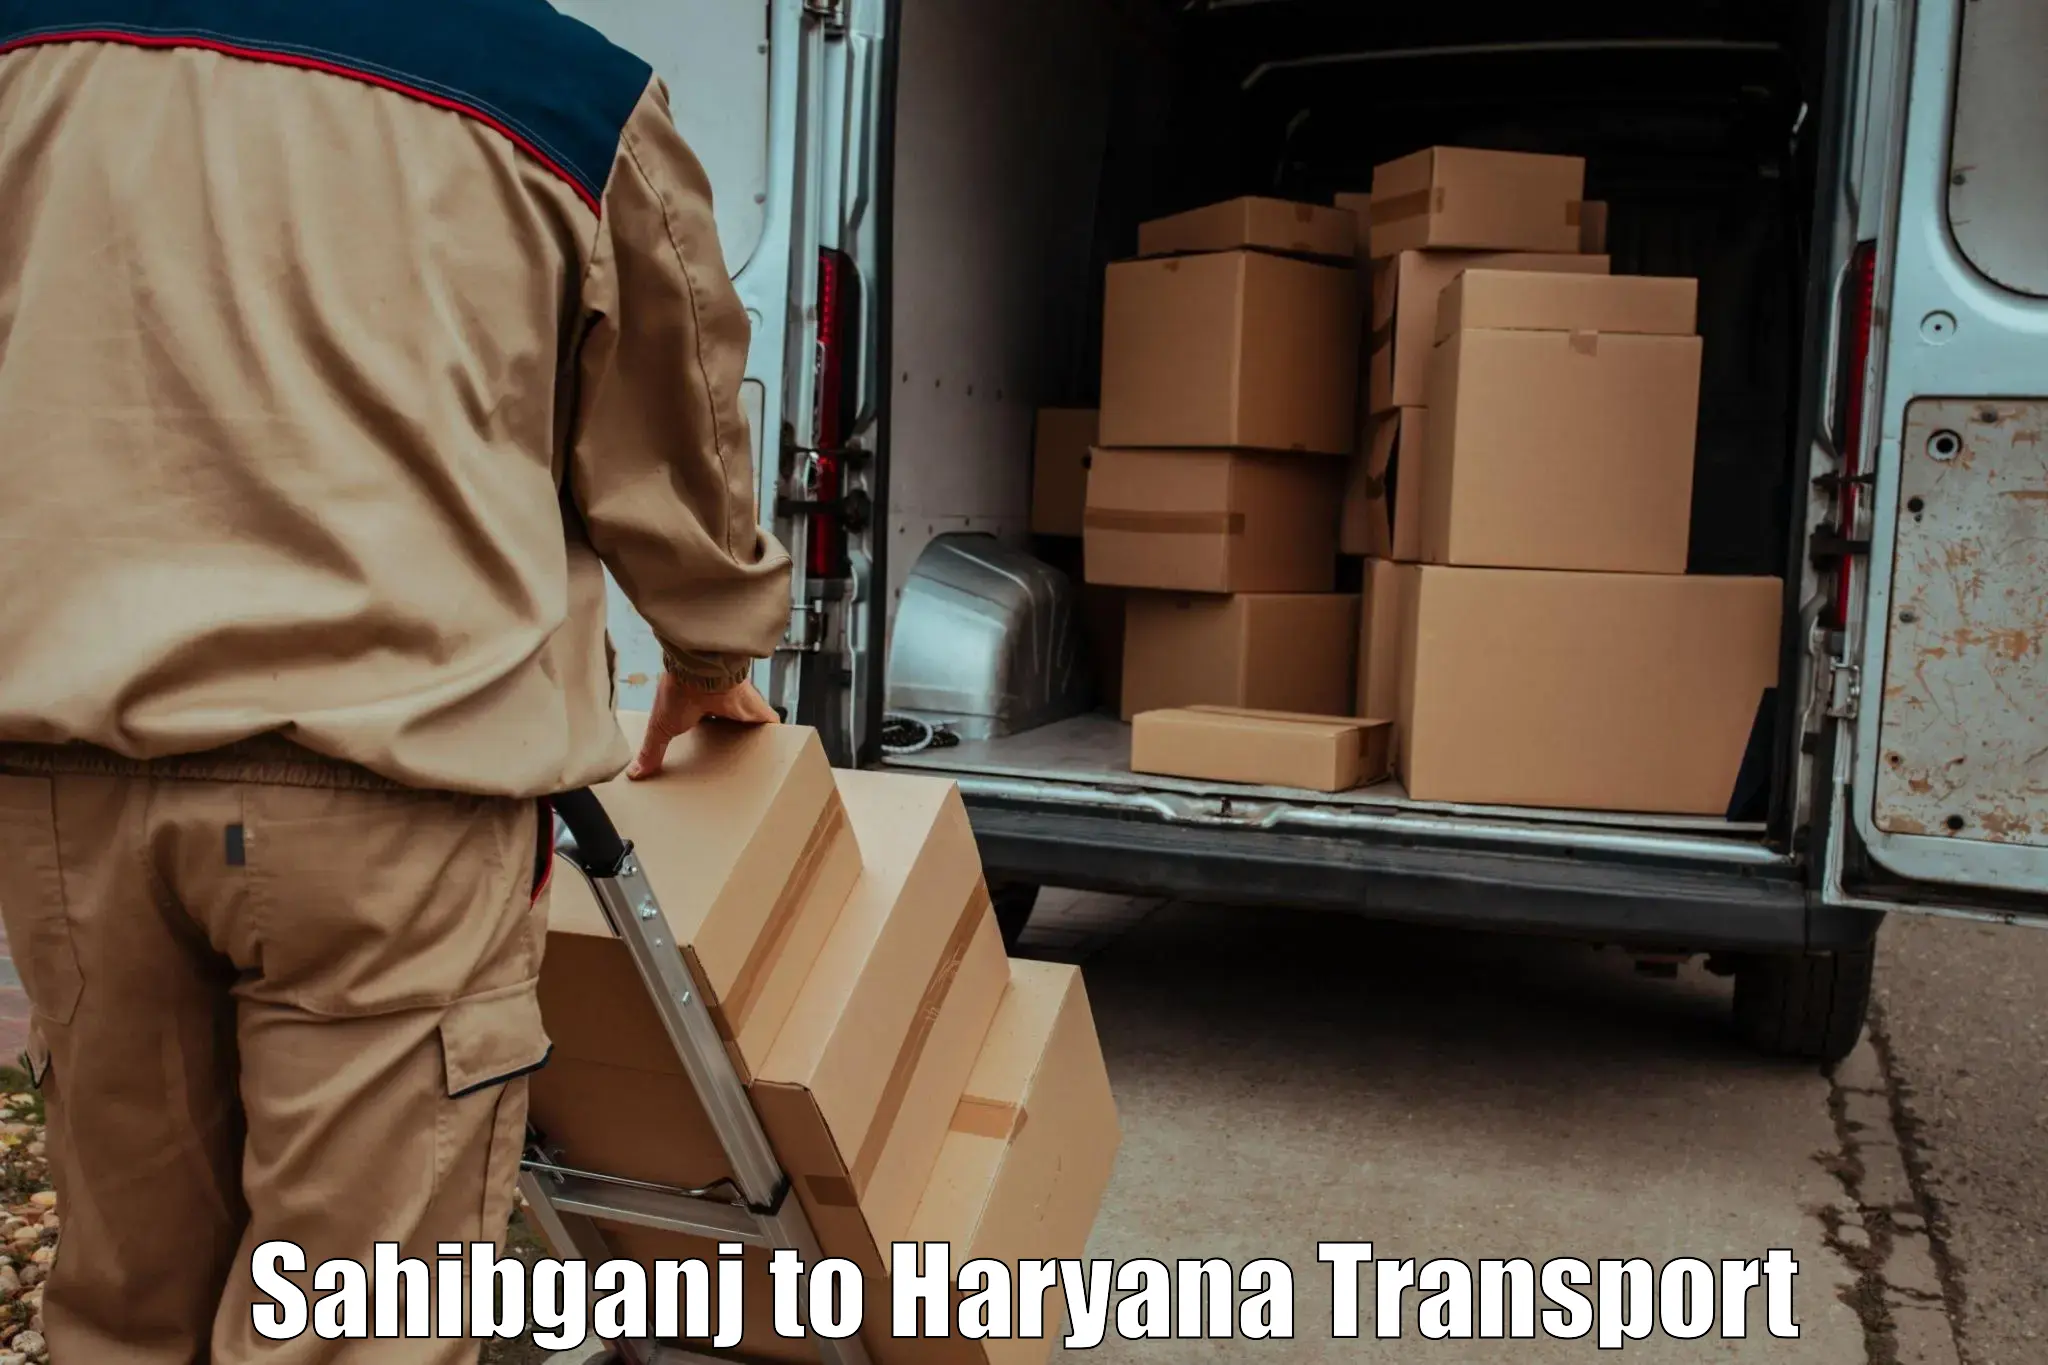 Daily parcel service transport Sahibganj to Shahabad Markanda